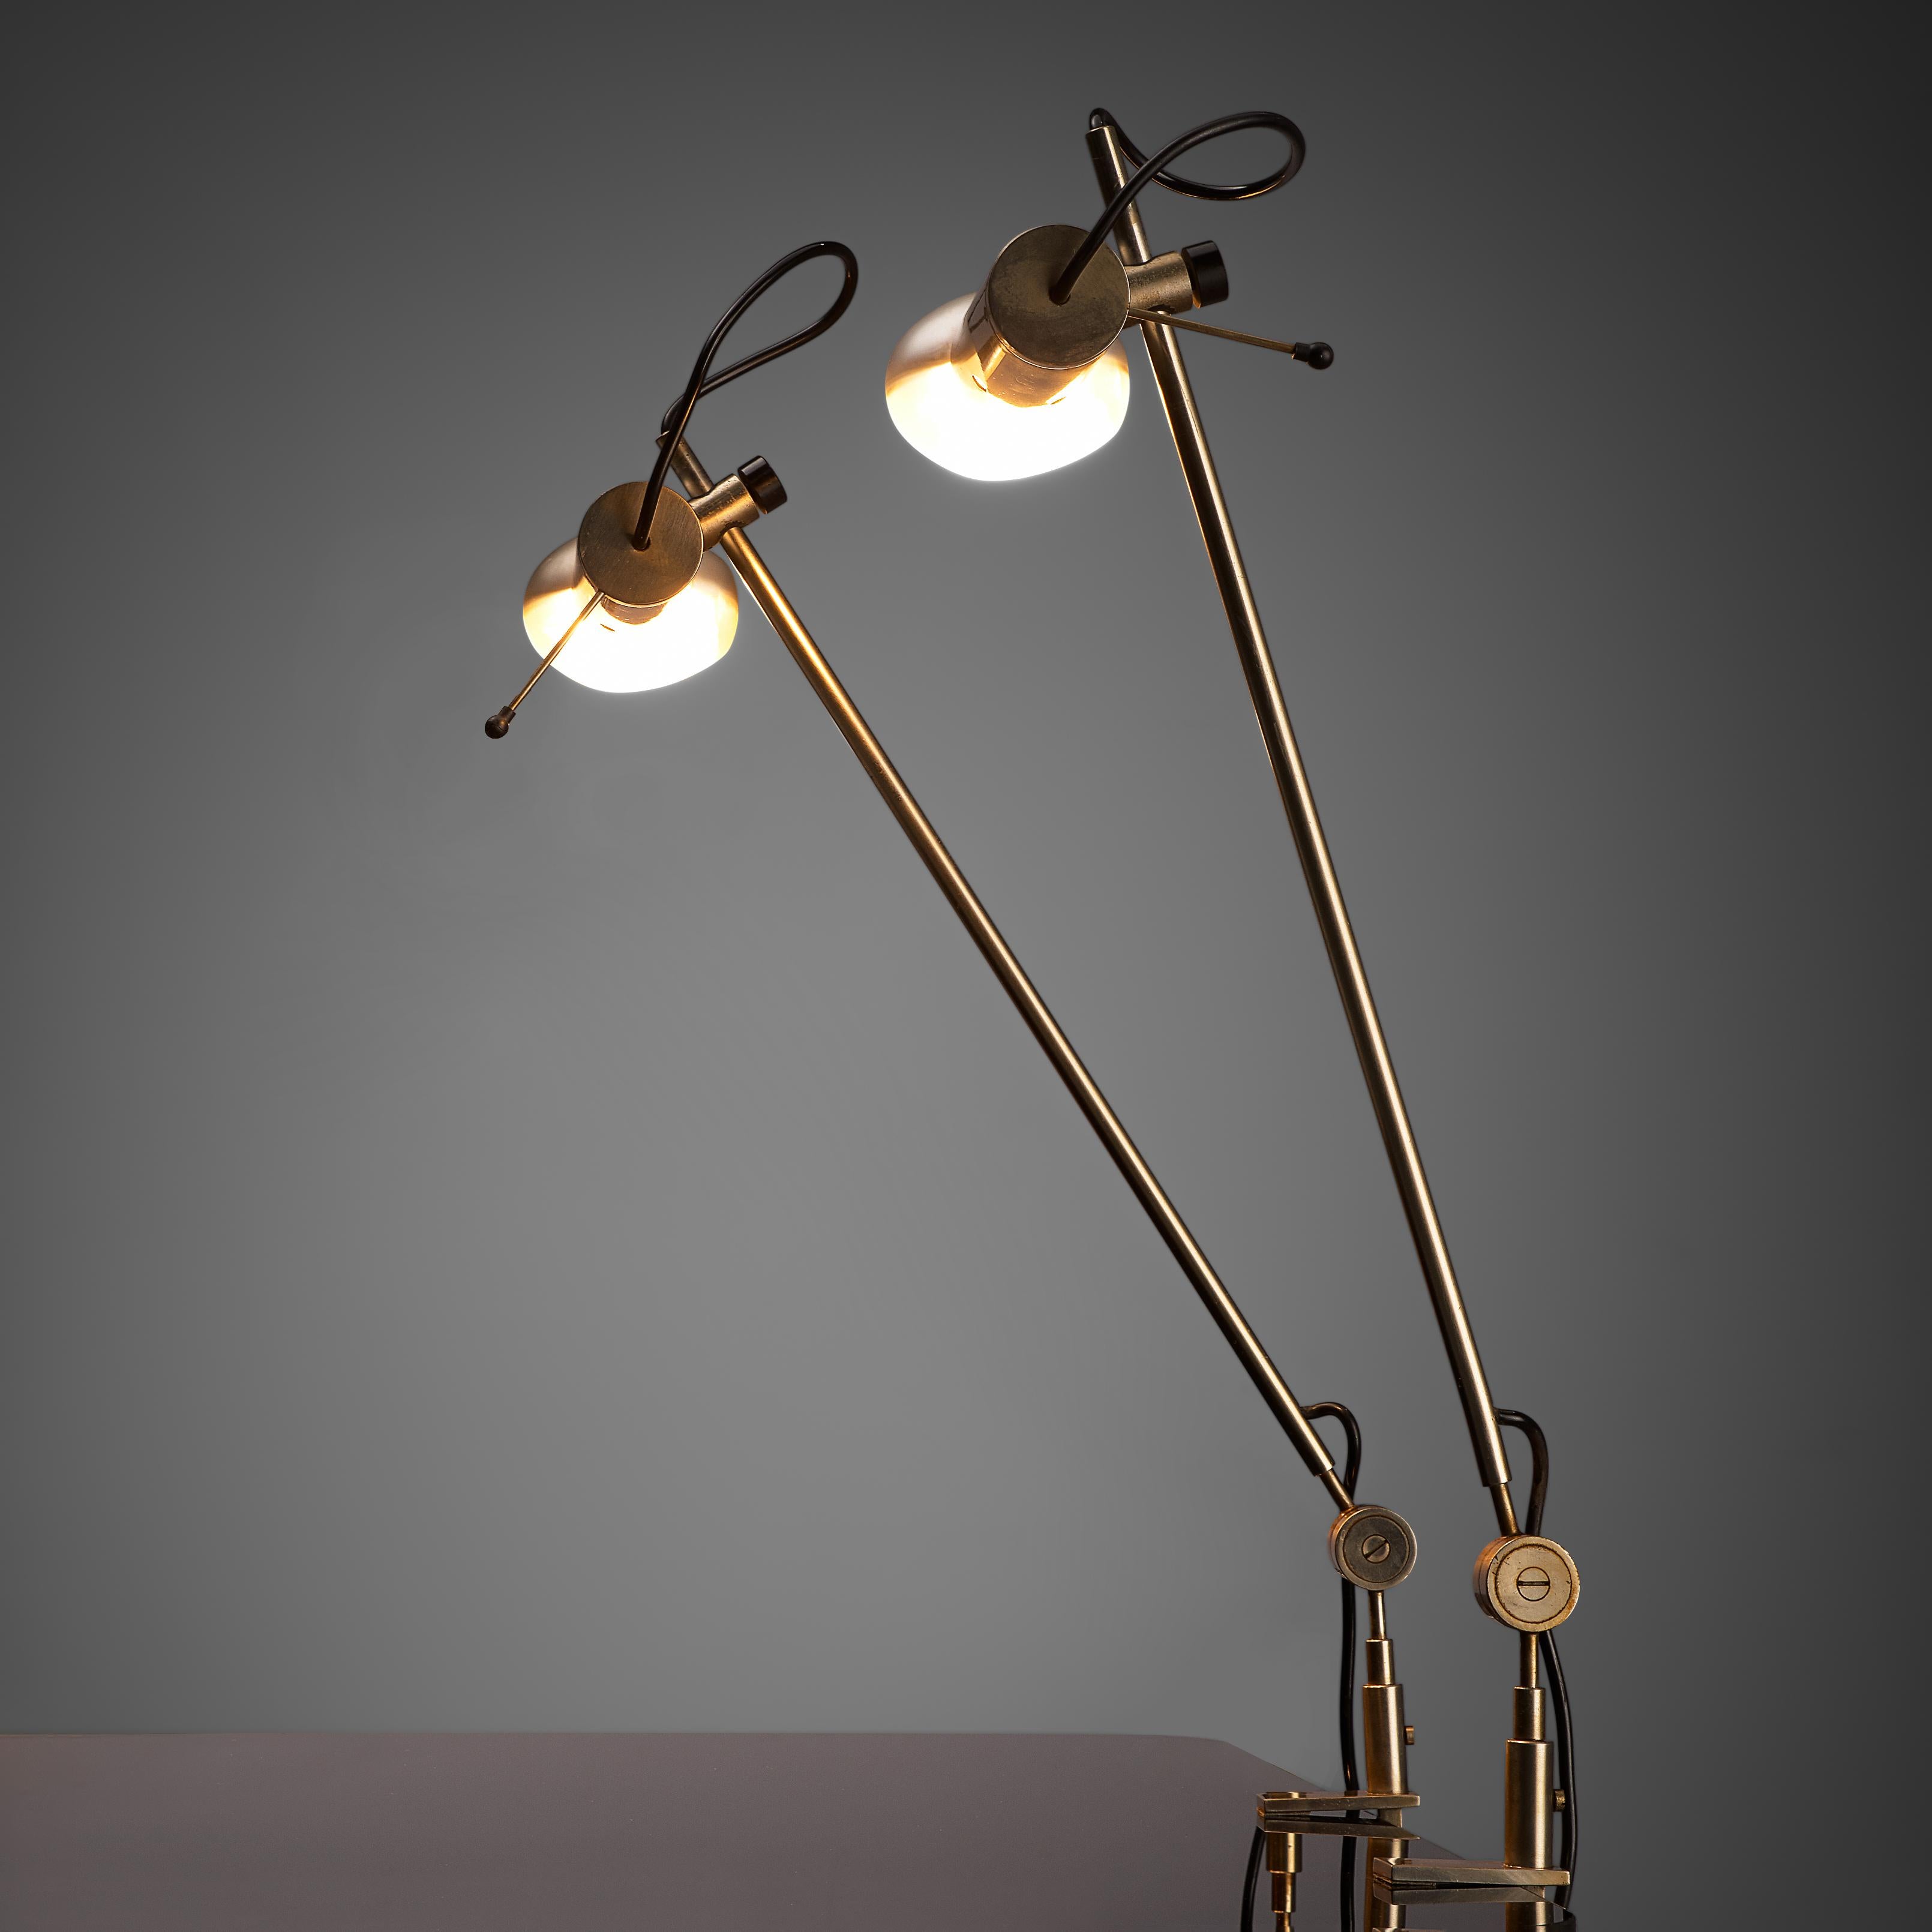 Tito Agnoli für O-Luce, Schreibtischleuchten 'Cornalux', Metall, Italien, 1964.

Moderne Tischlampen, entworfen von Tito Agnoli. Die Glühbirne hat einen Reflektor im Inneren und das Gestell ist aus Stahl gefertigt, was der Leuchte ihr